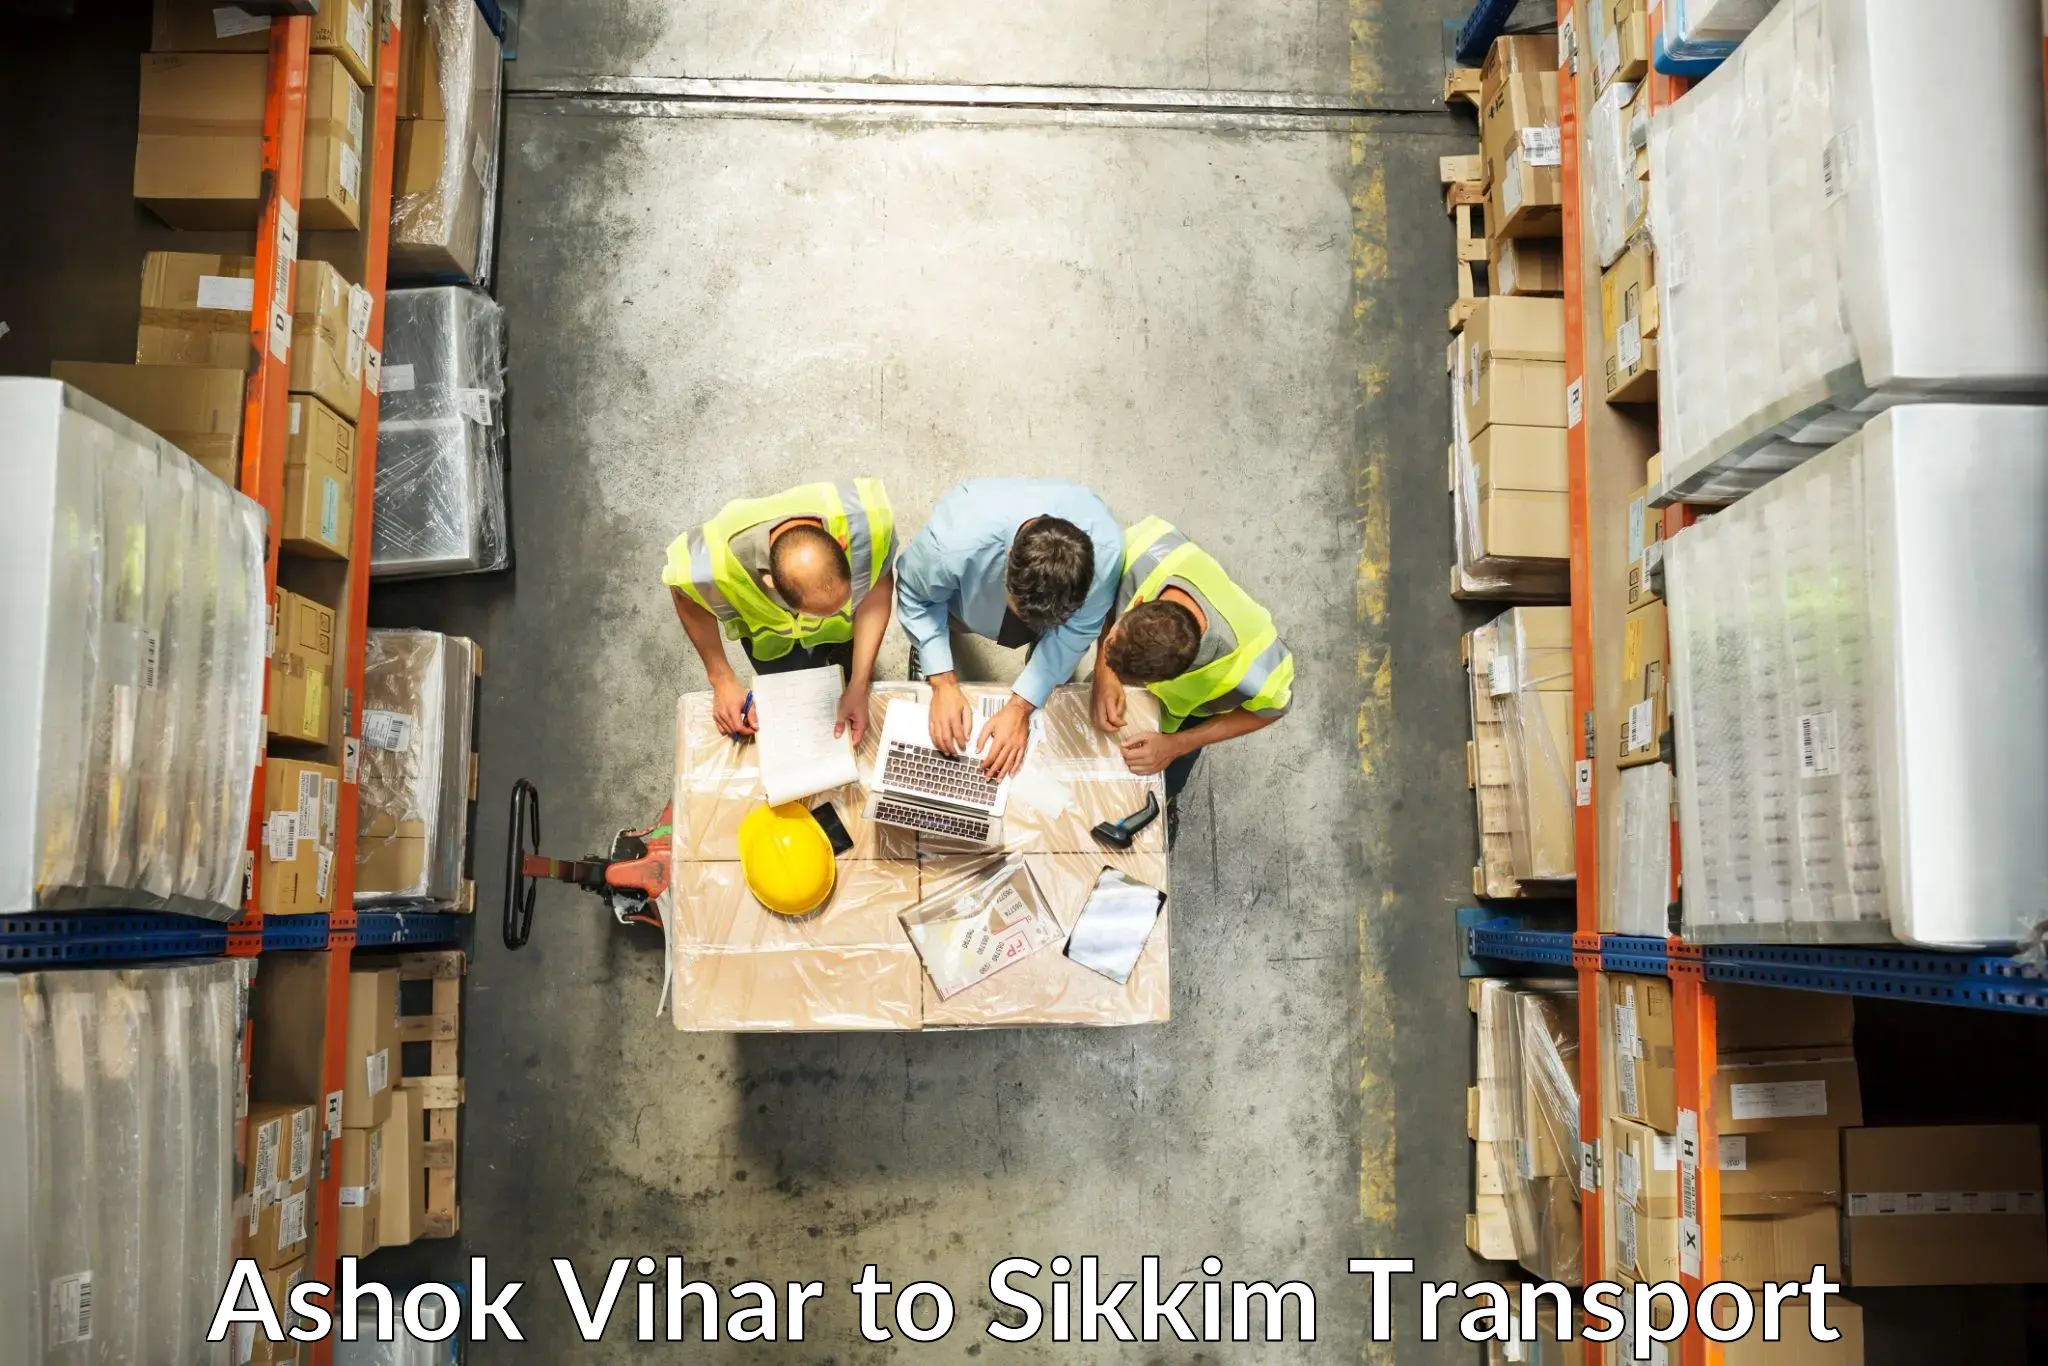 Shipping partner Ashok Vihar to East Sikkim